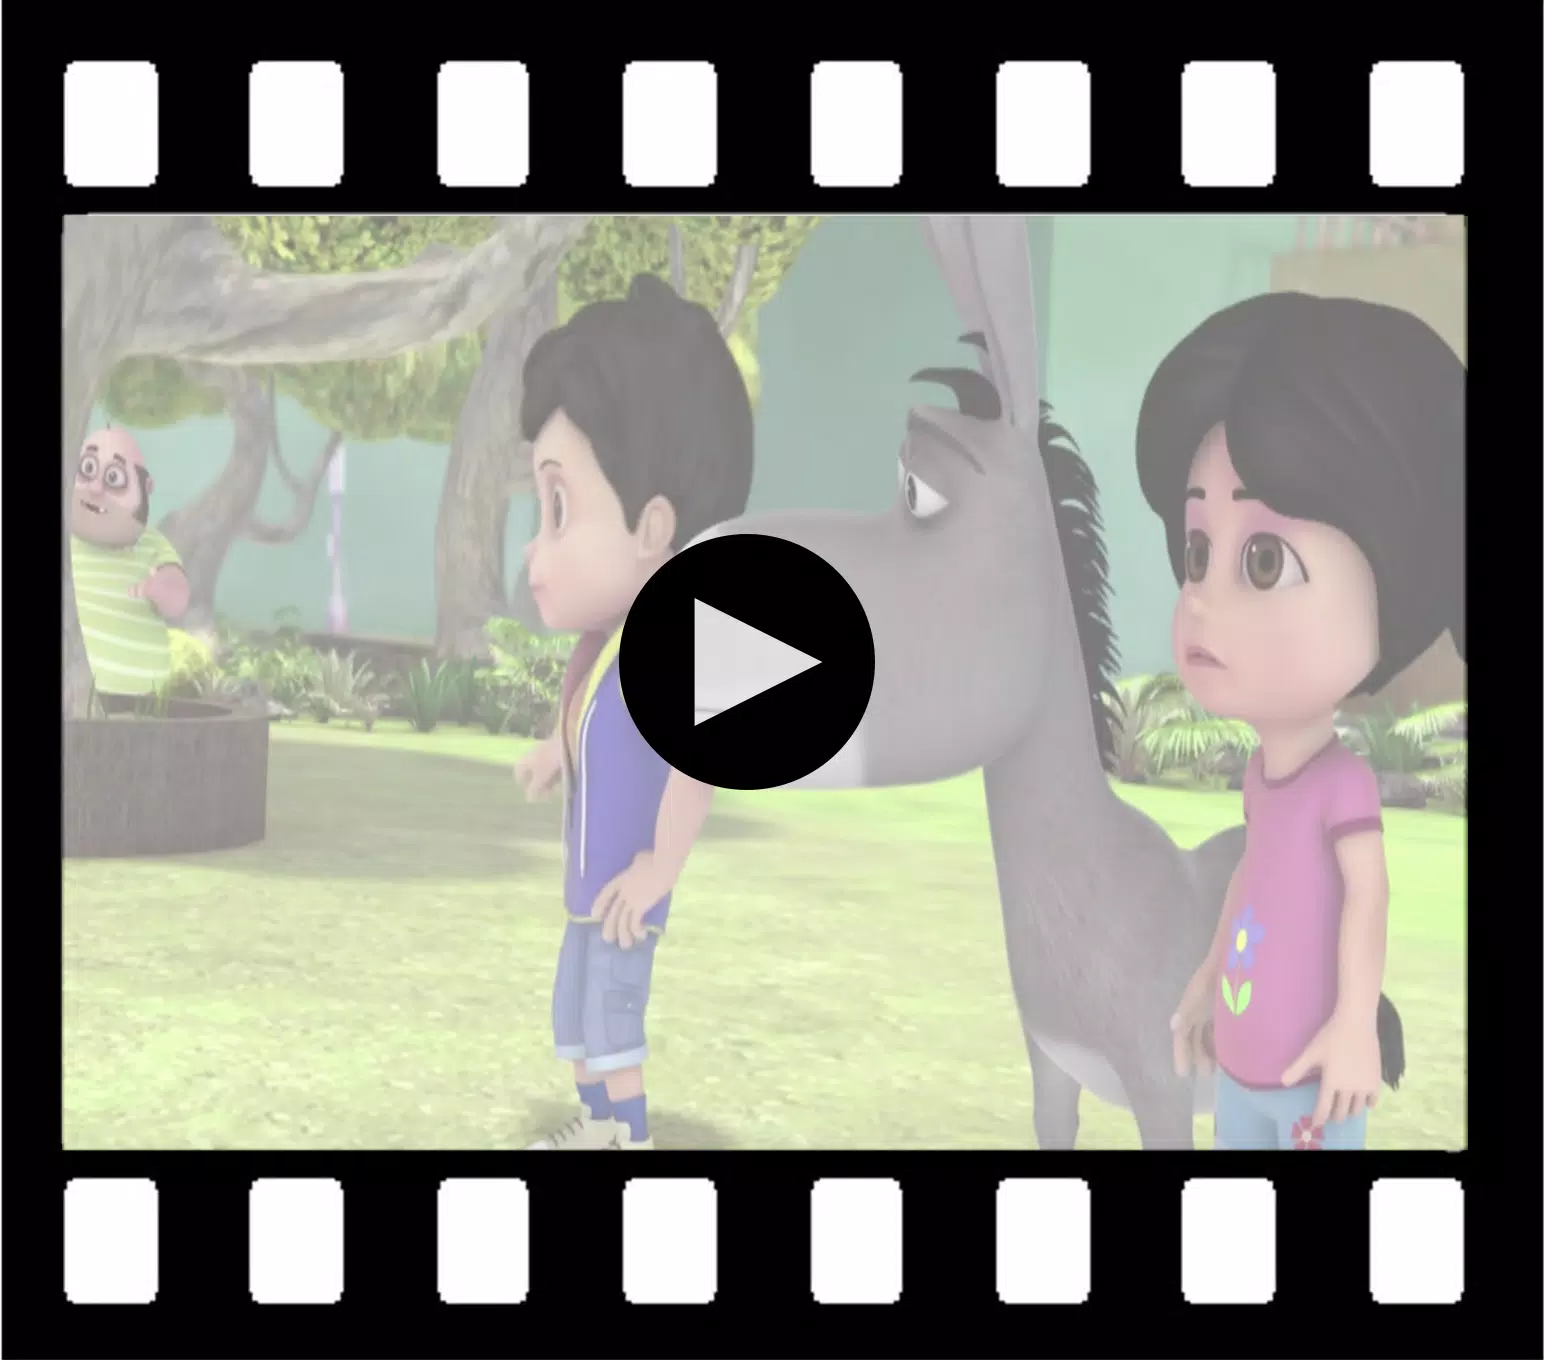 Vir. Robot Boy Collection Video APK pour Android Télécharger